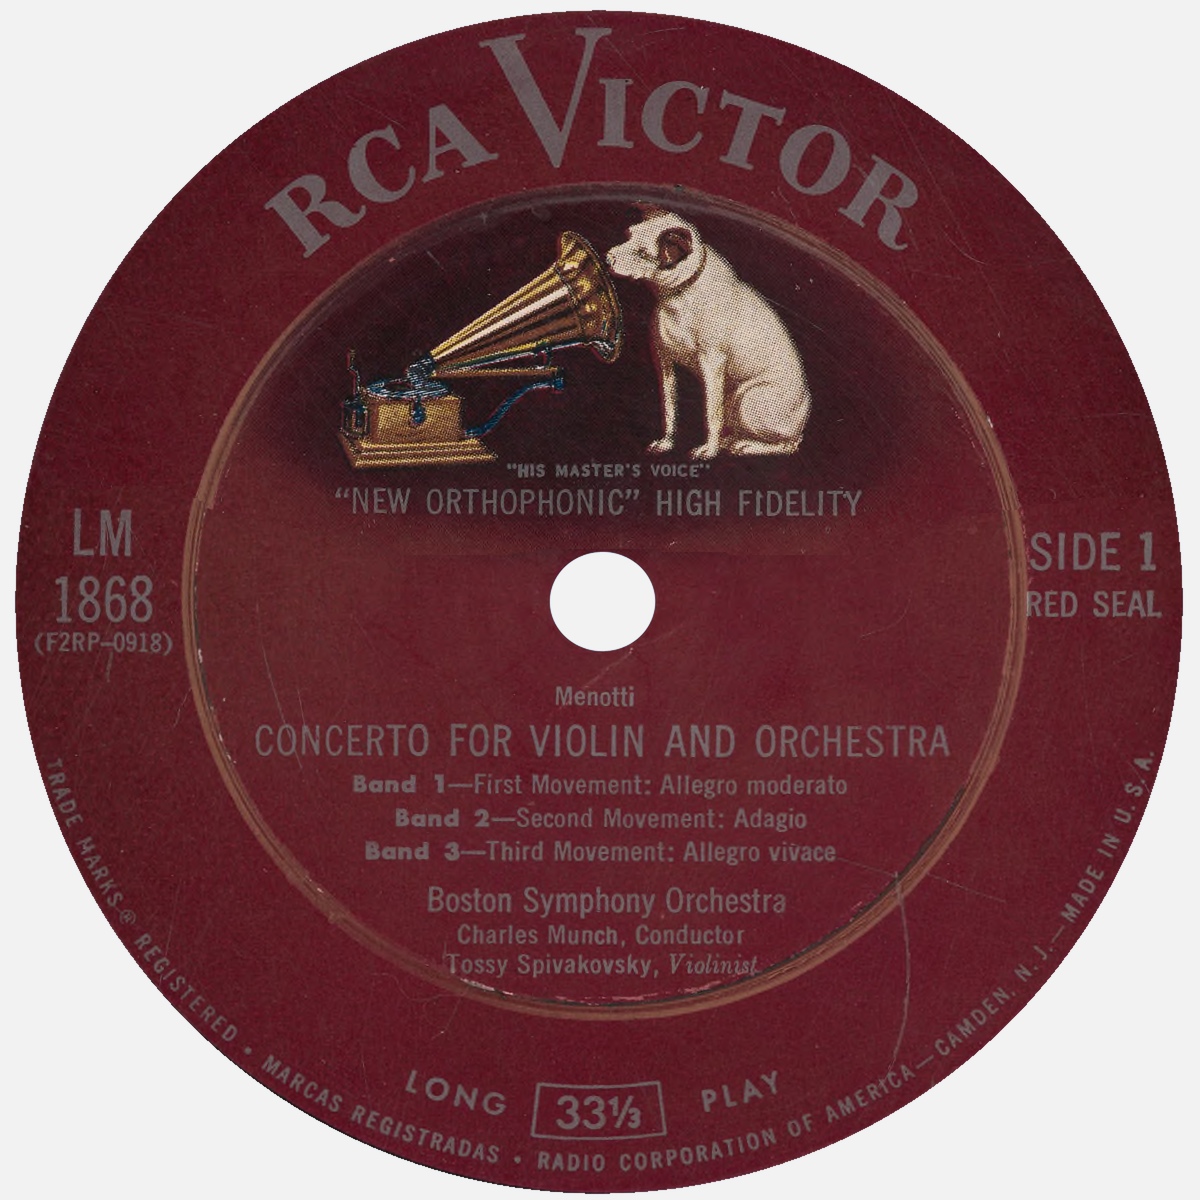 Étiquette recto du disque RCA Victor LM 1868